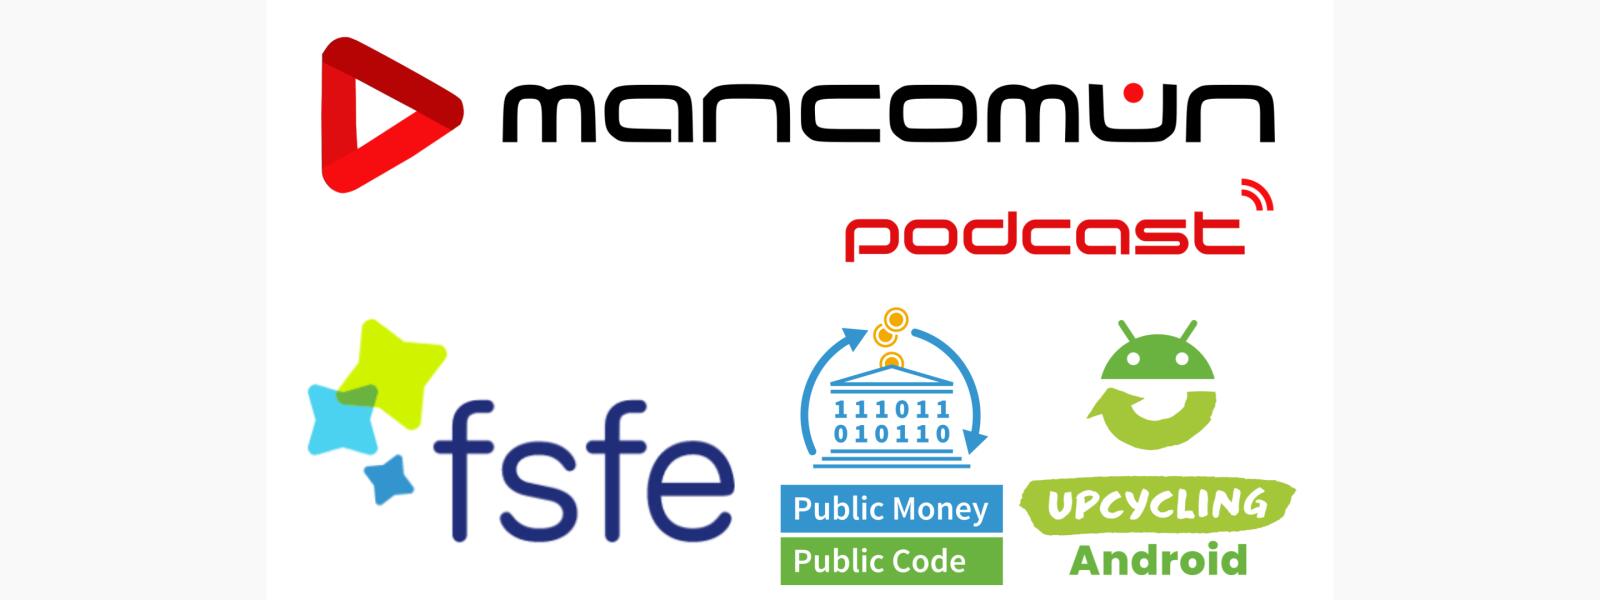 #Mancomún Podcast: 82 – Campañas y proyectos de la Free Software Foundation Europe, con Andrés Diz